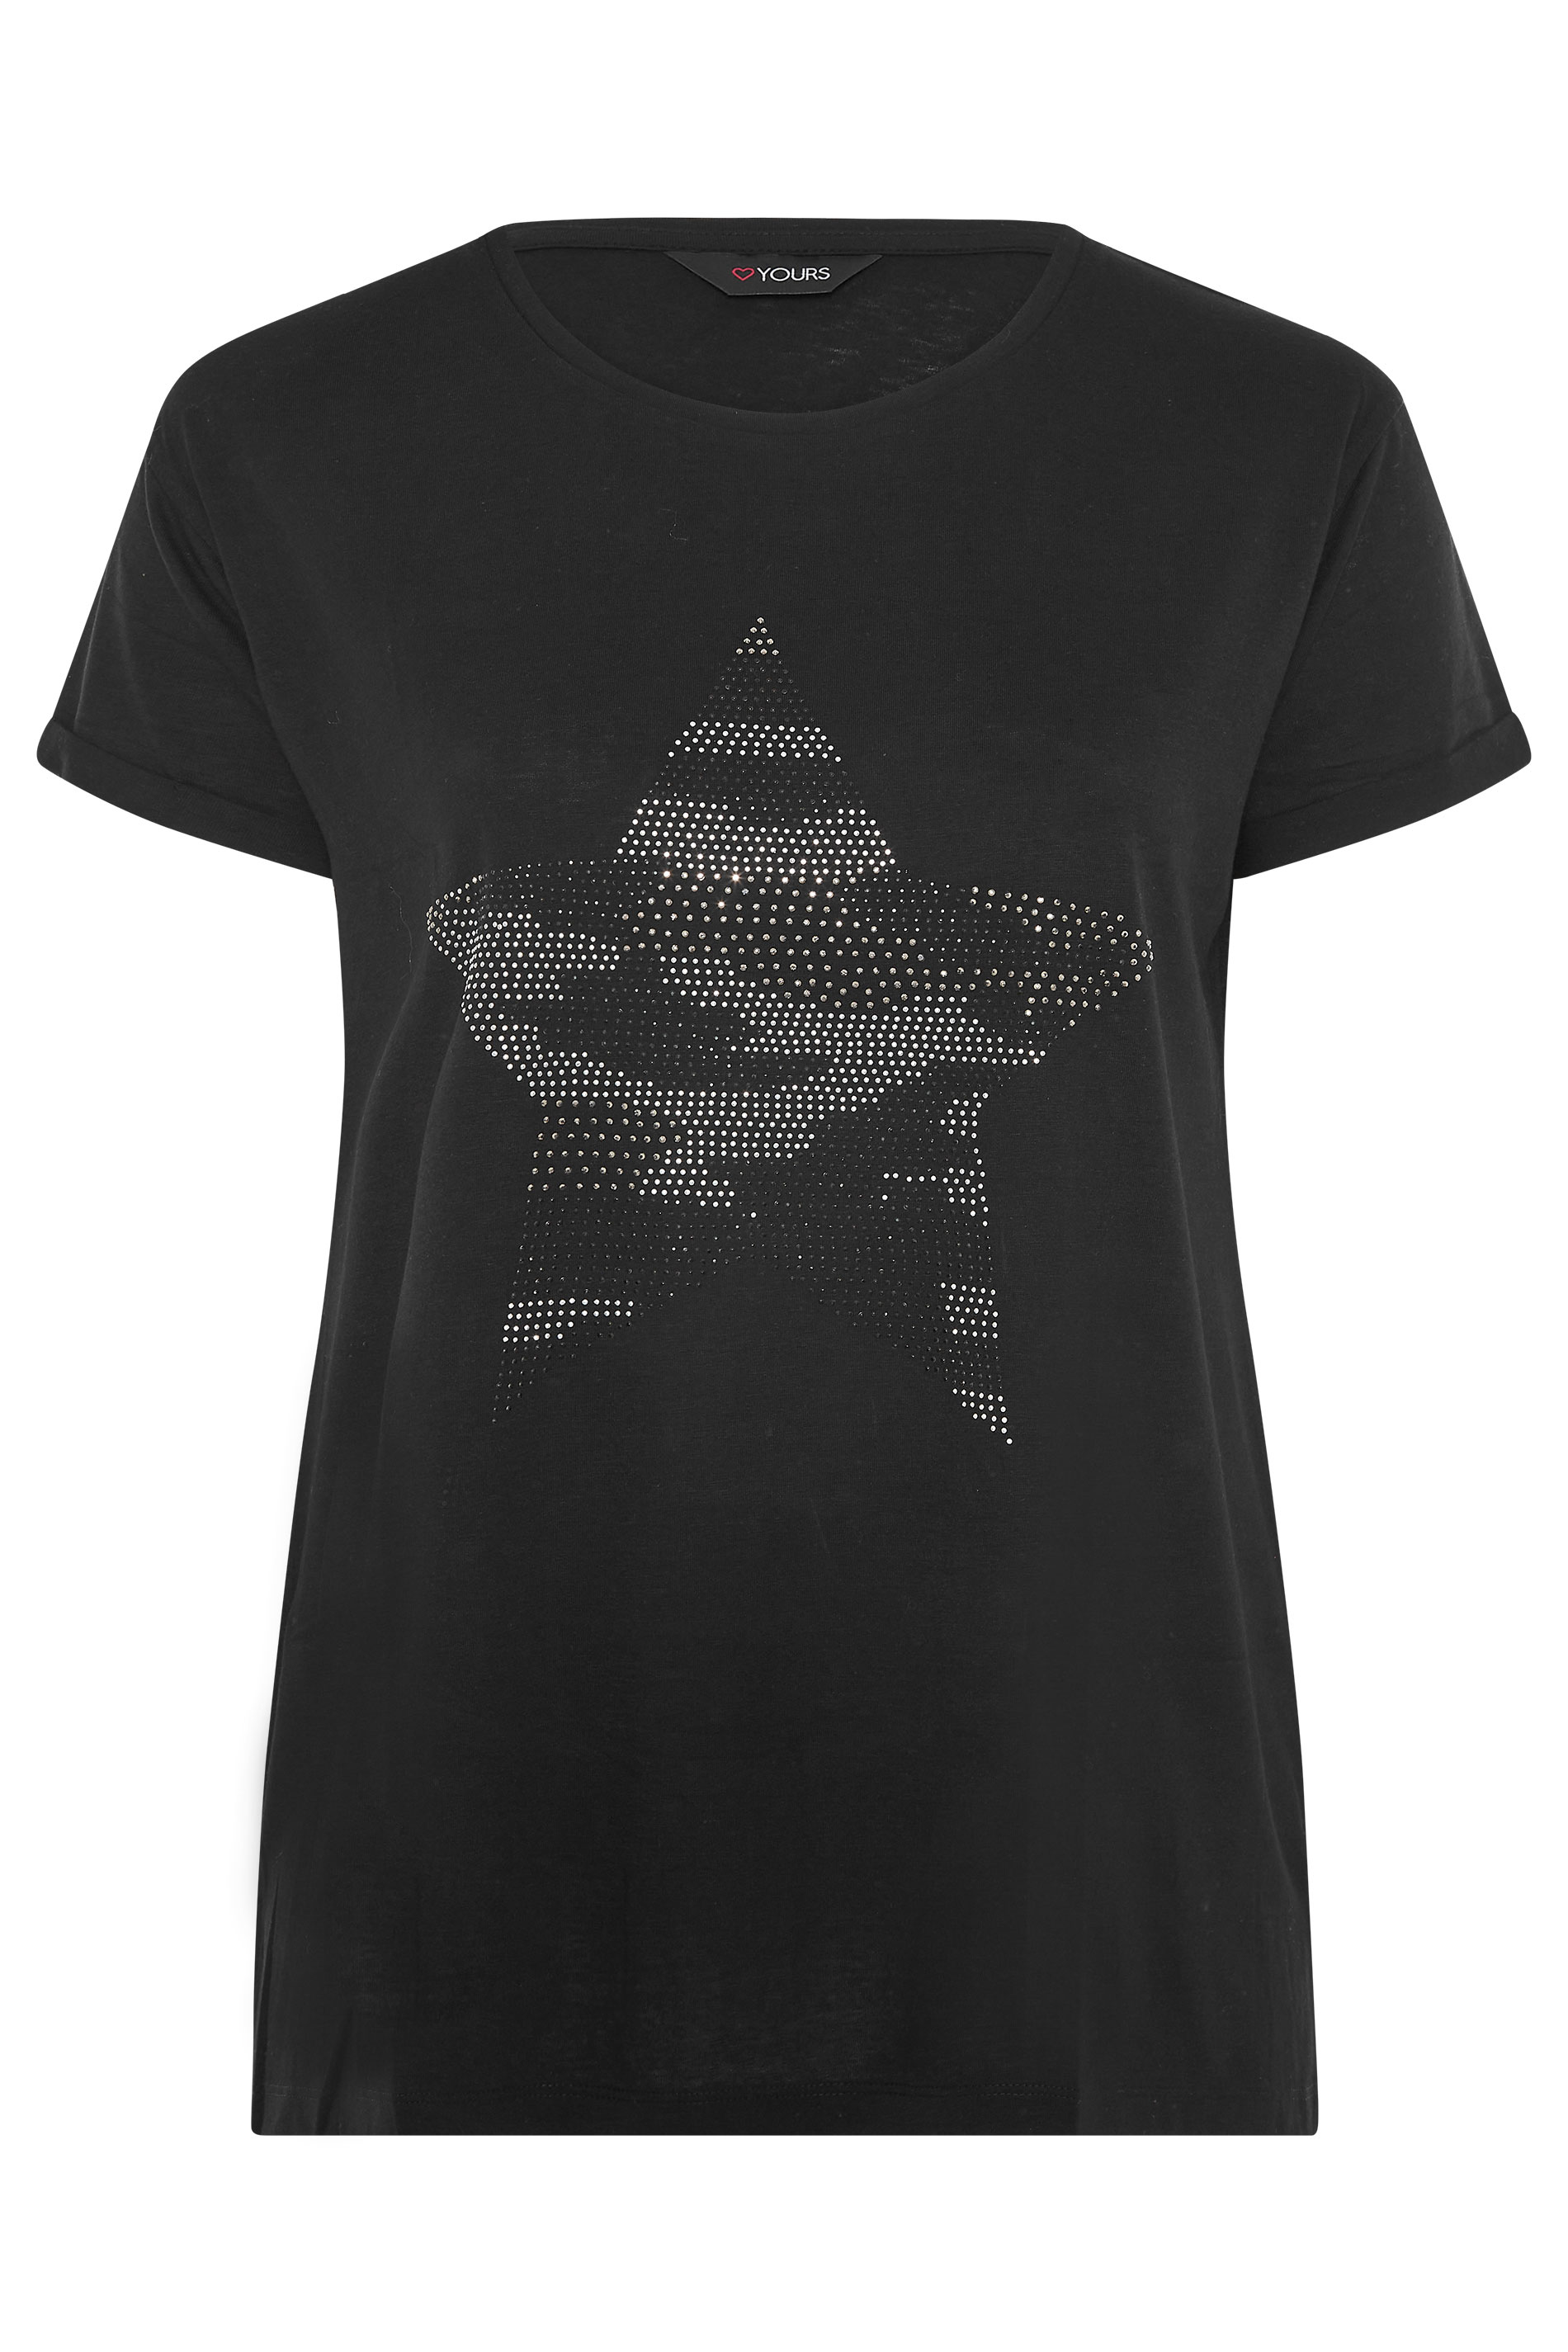 Grande taille  Tops Grande taille  T-Shirts | T-Shirt Noir Ourlet Plongeant Clouté Étoile - SV03719